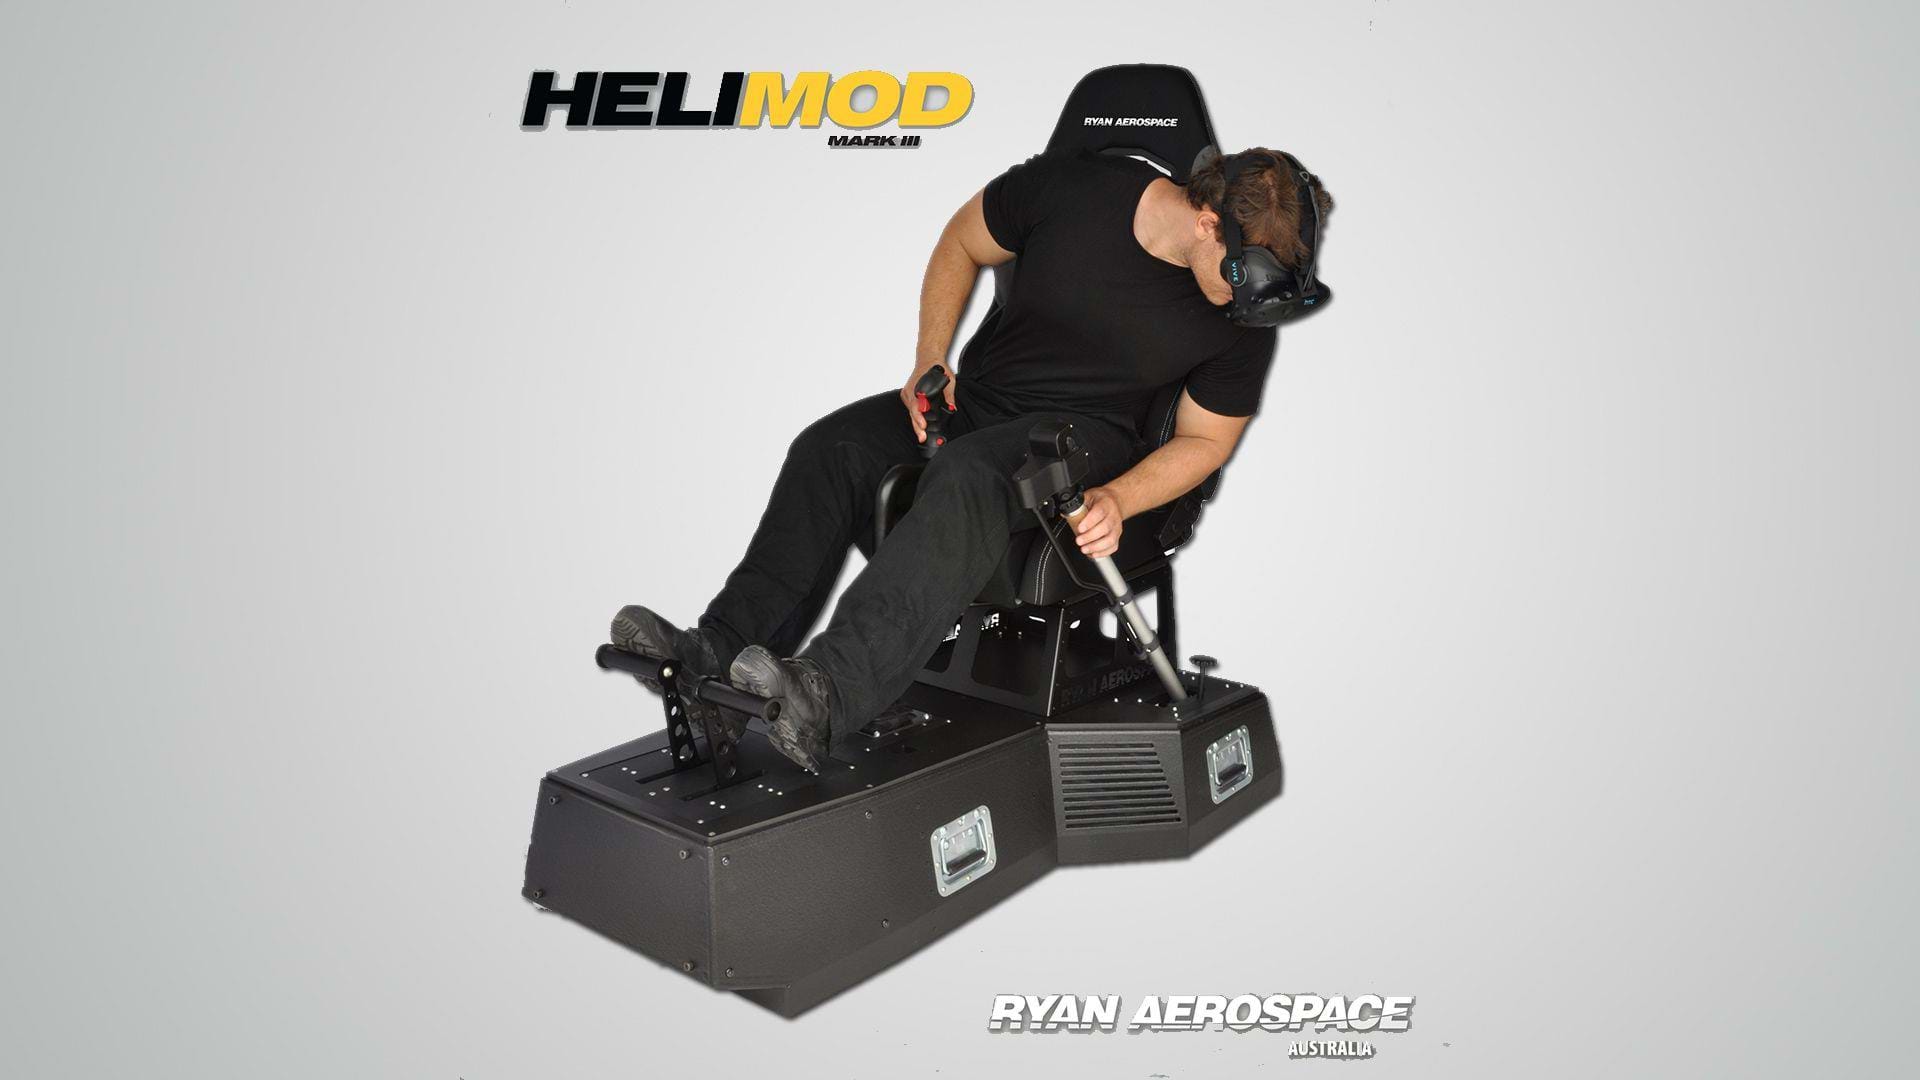 Ryan Aerospace to announce HELIMOD Mark III